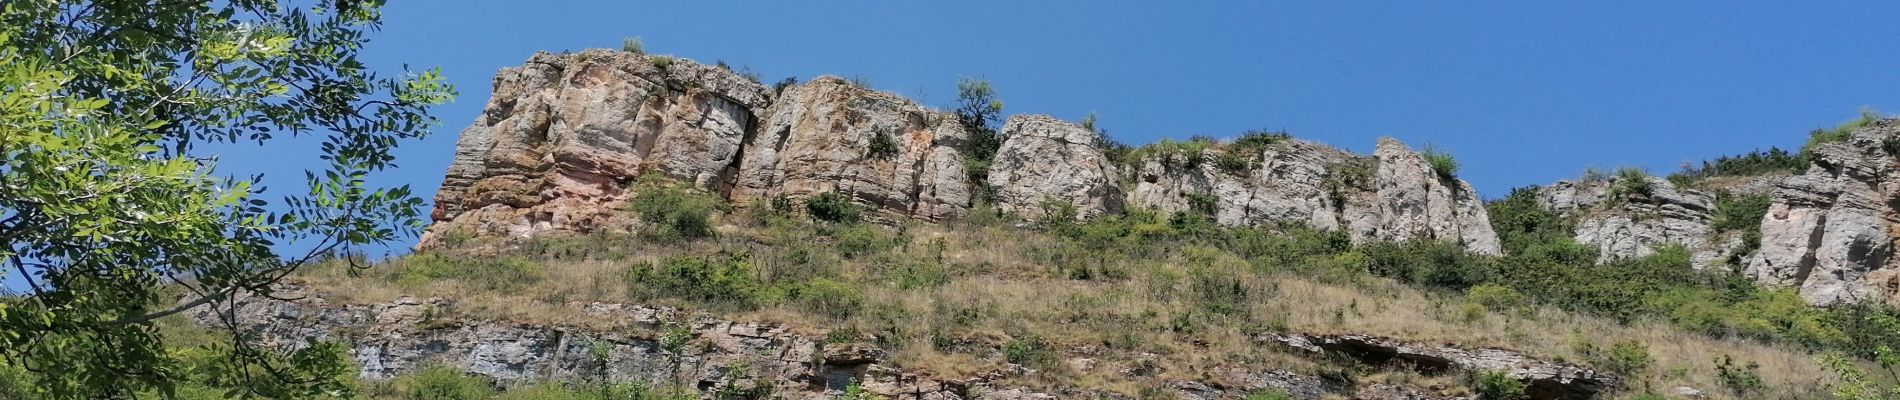 Excursión Senderismo Solutré-Pouilly - roche de solutre - Photo